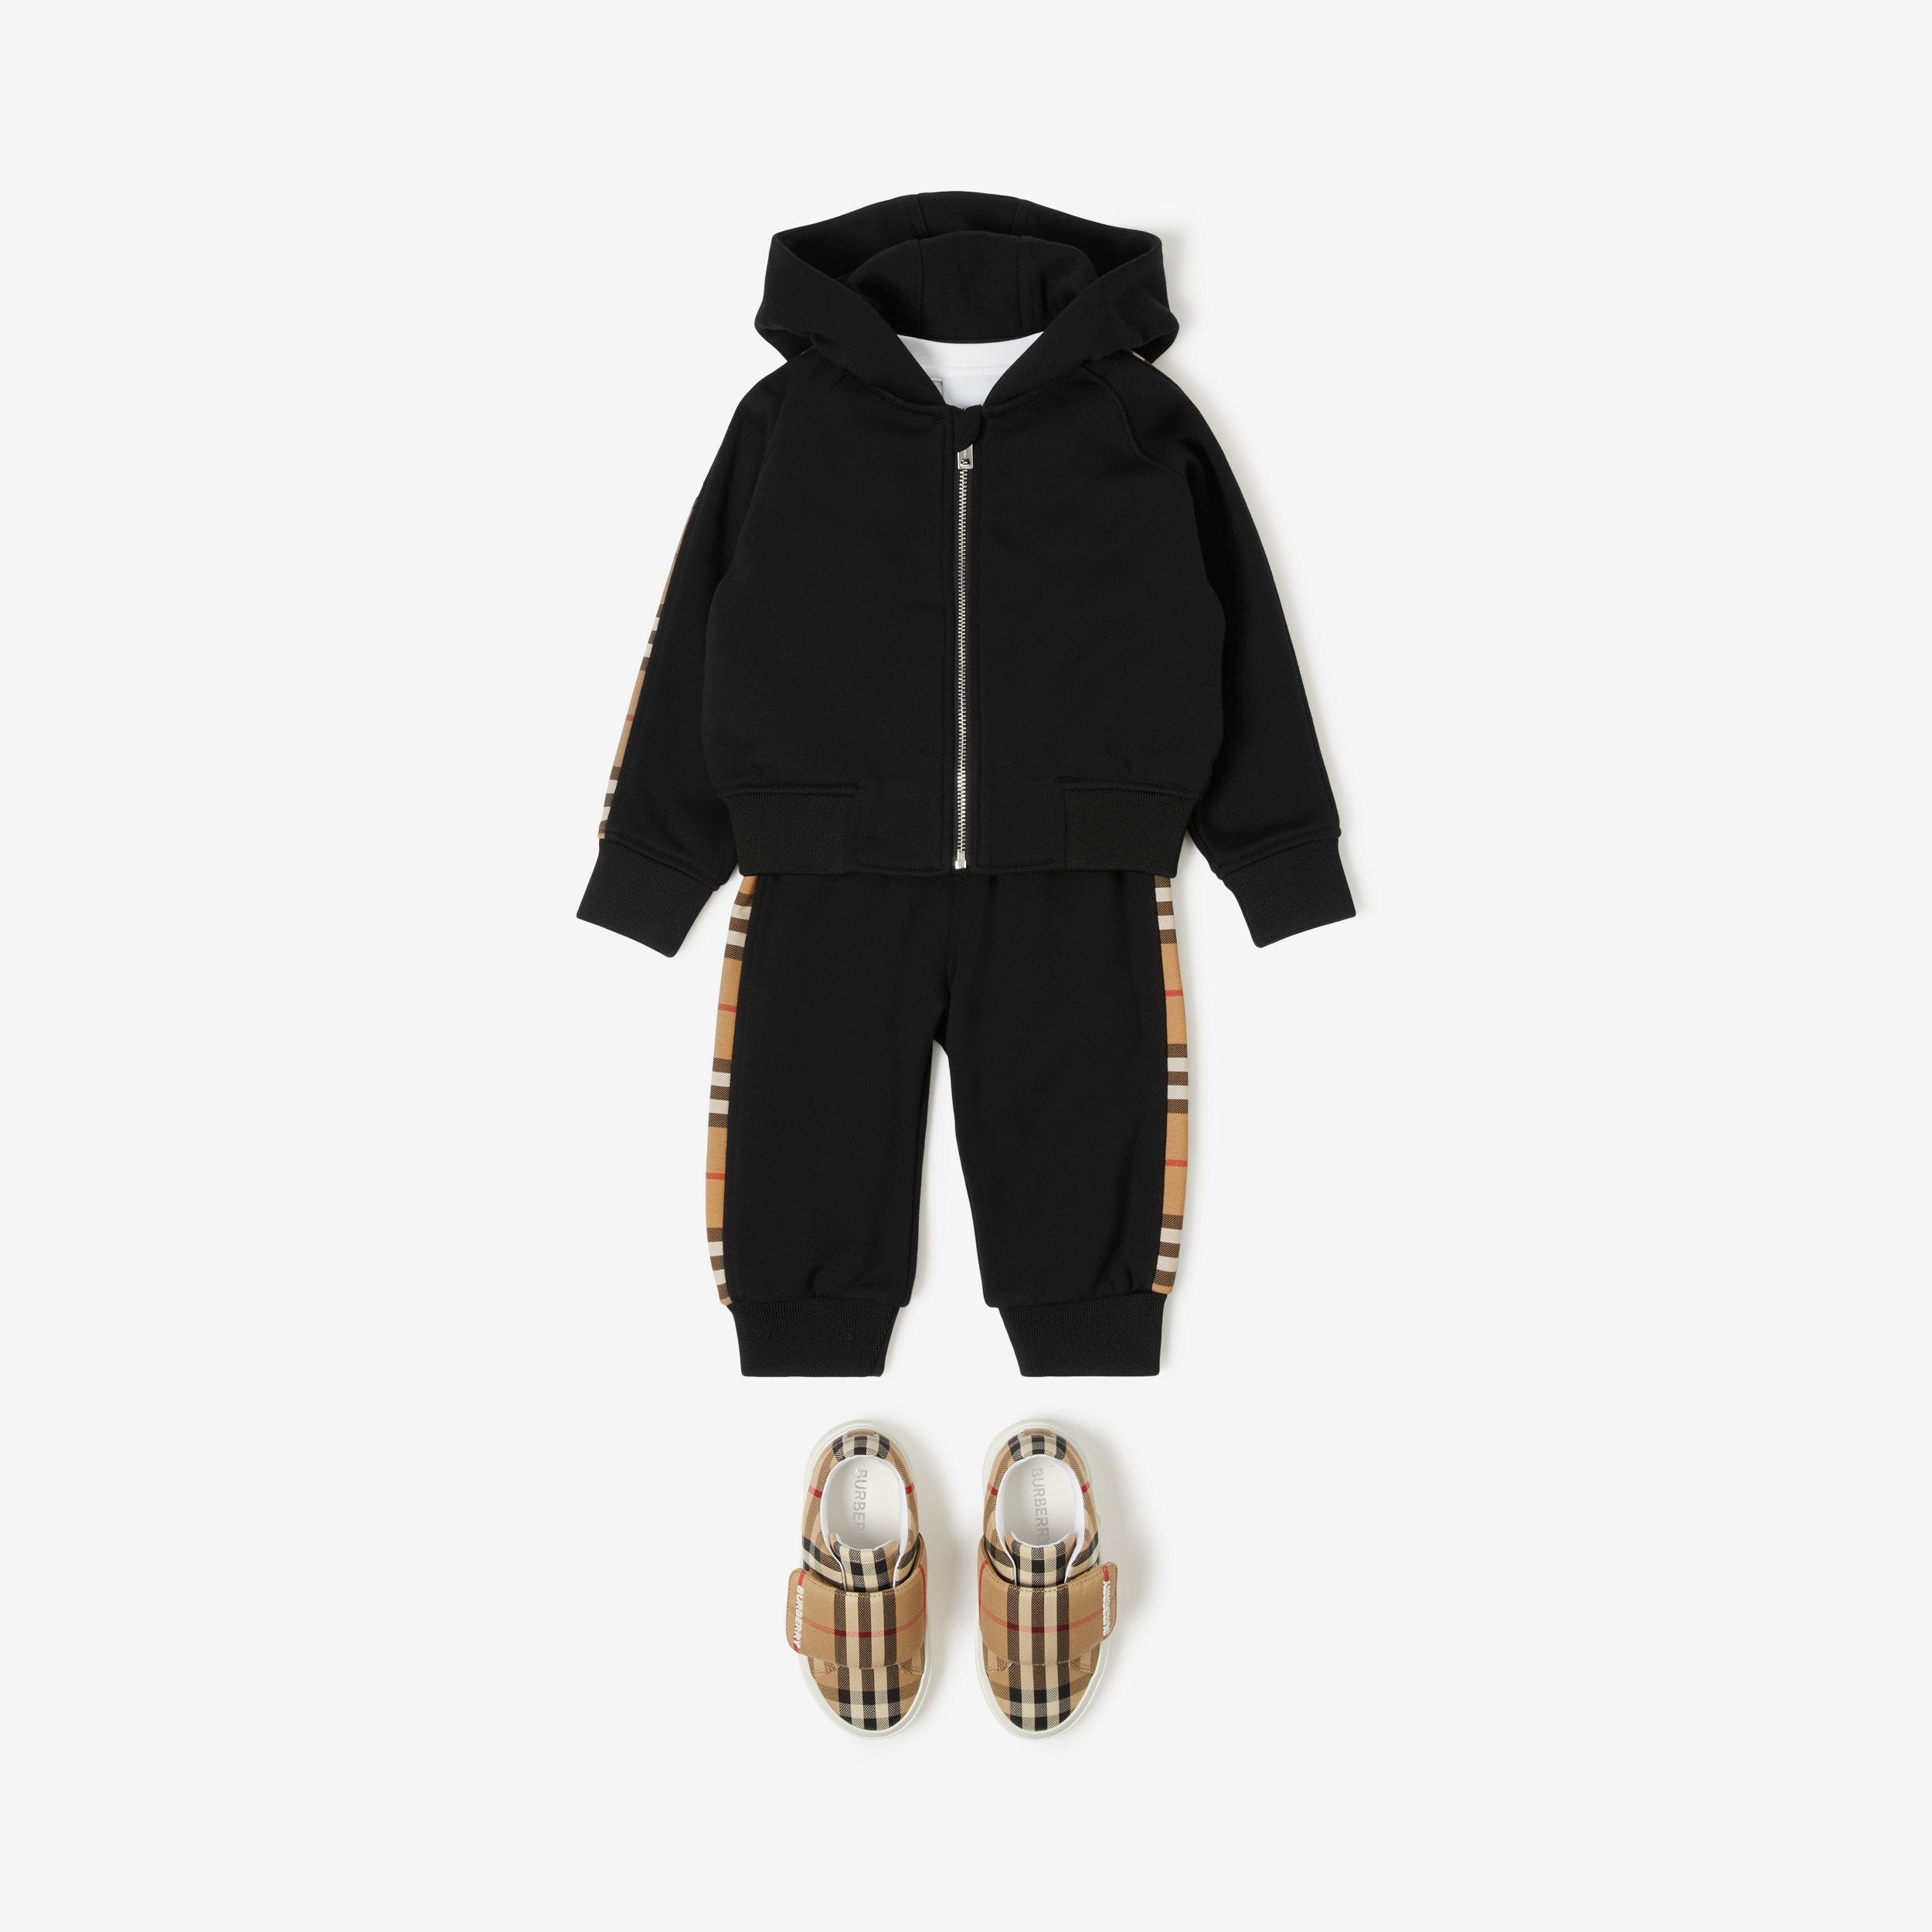 Sudadera en algodón con cremallera, capucha y paneles Check (Negro) - Niños | Burberry® oficial - 3